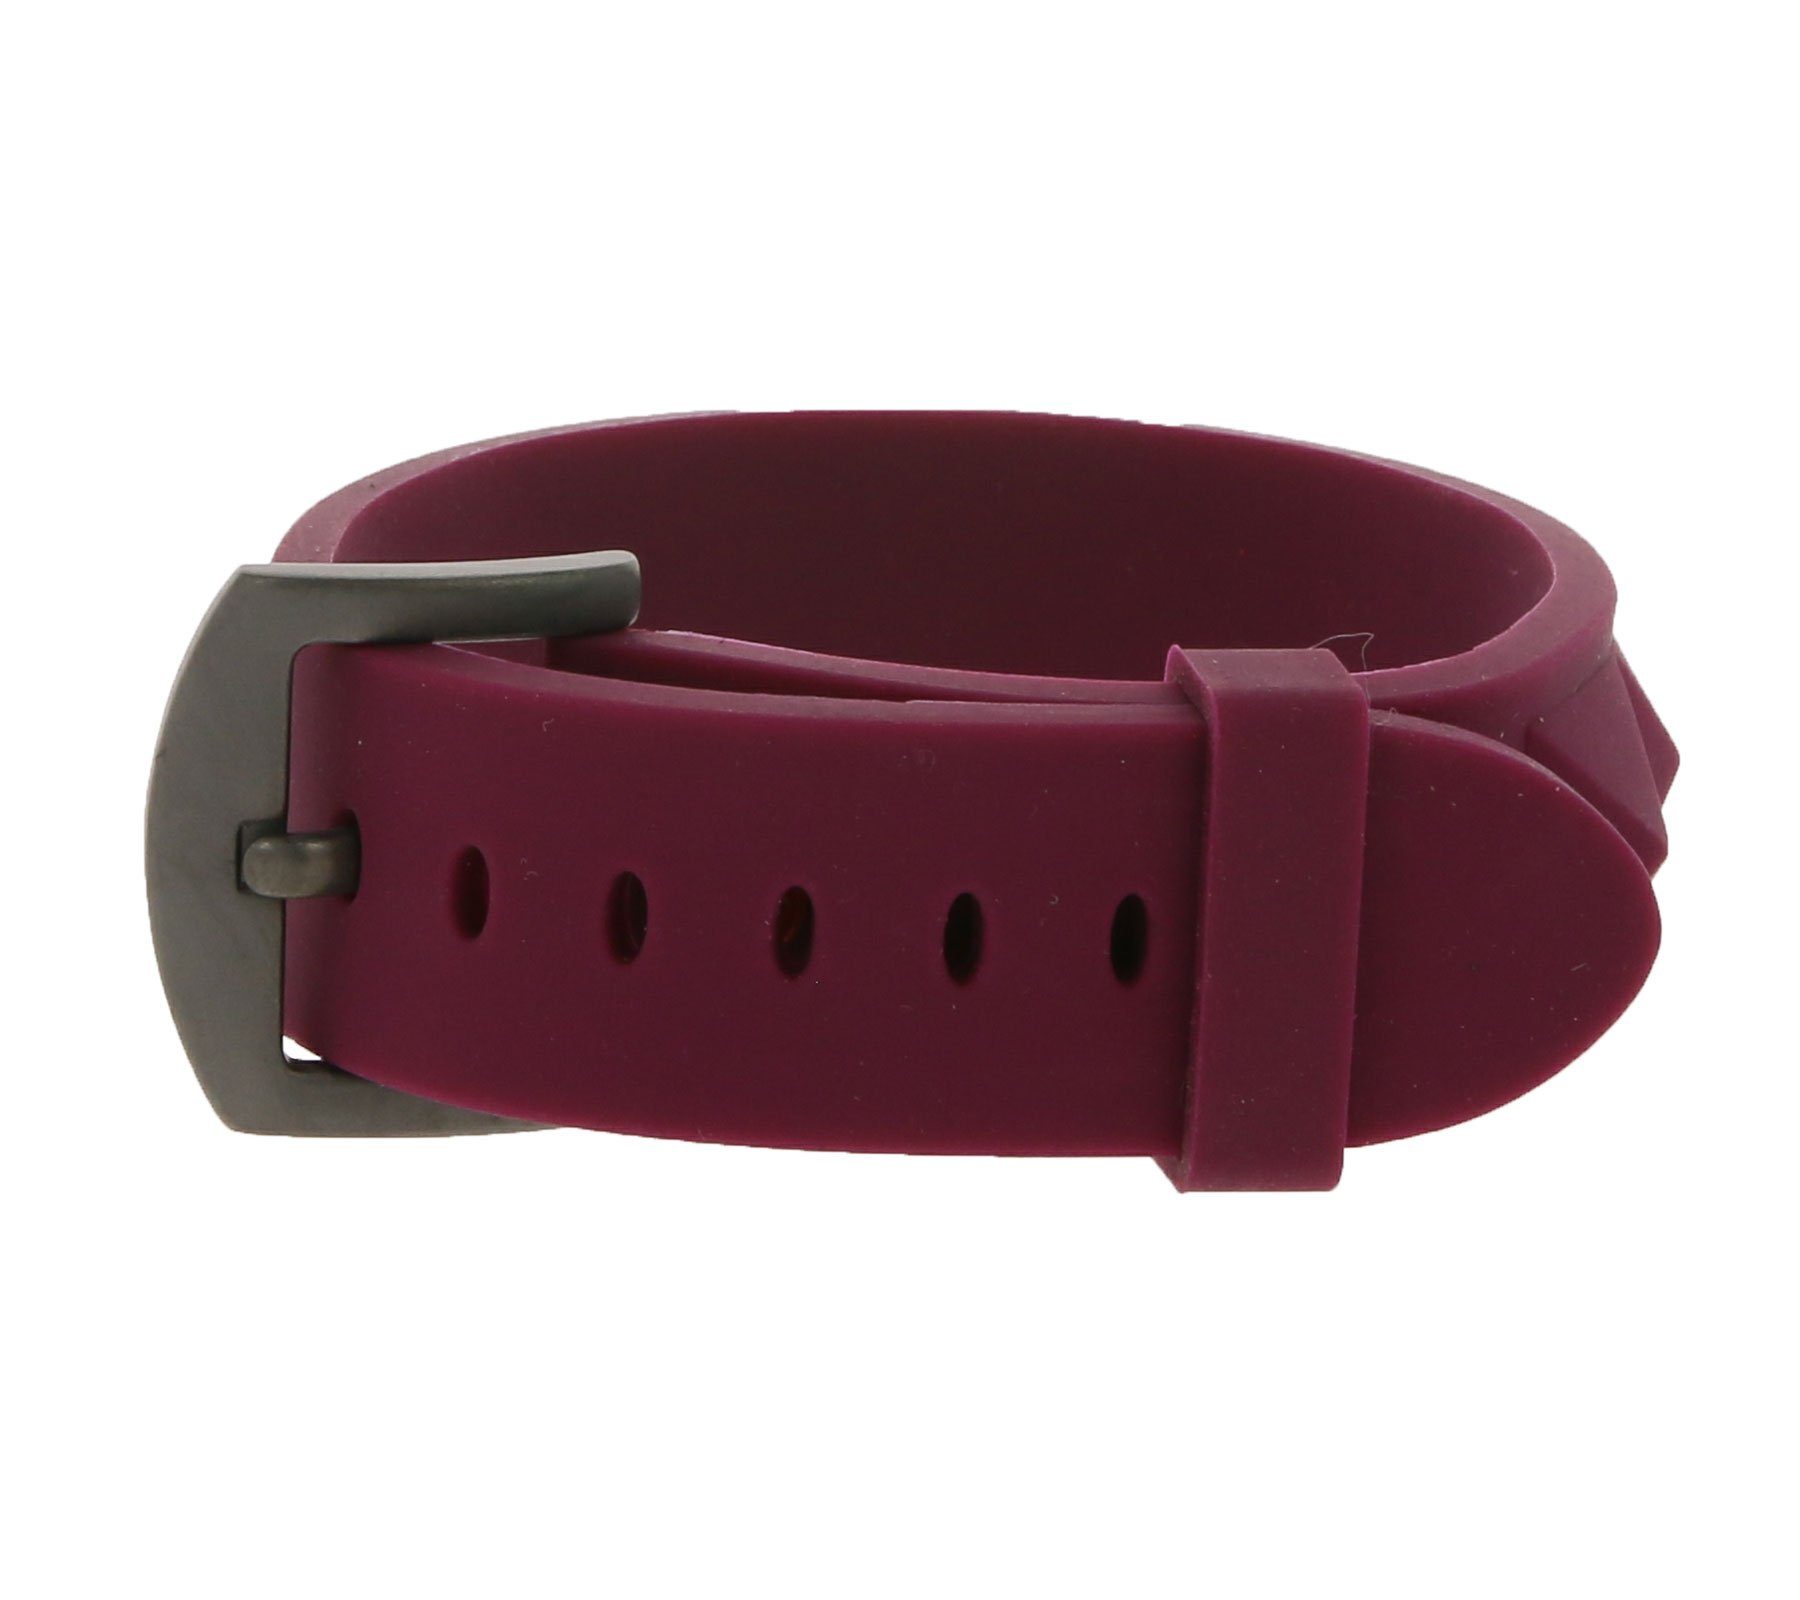 C3 Armband C3 Mode-Schmuck modernes Silikon-Armband Arm-Schmuck Violett mit Schnallen-Verschluss